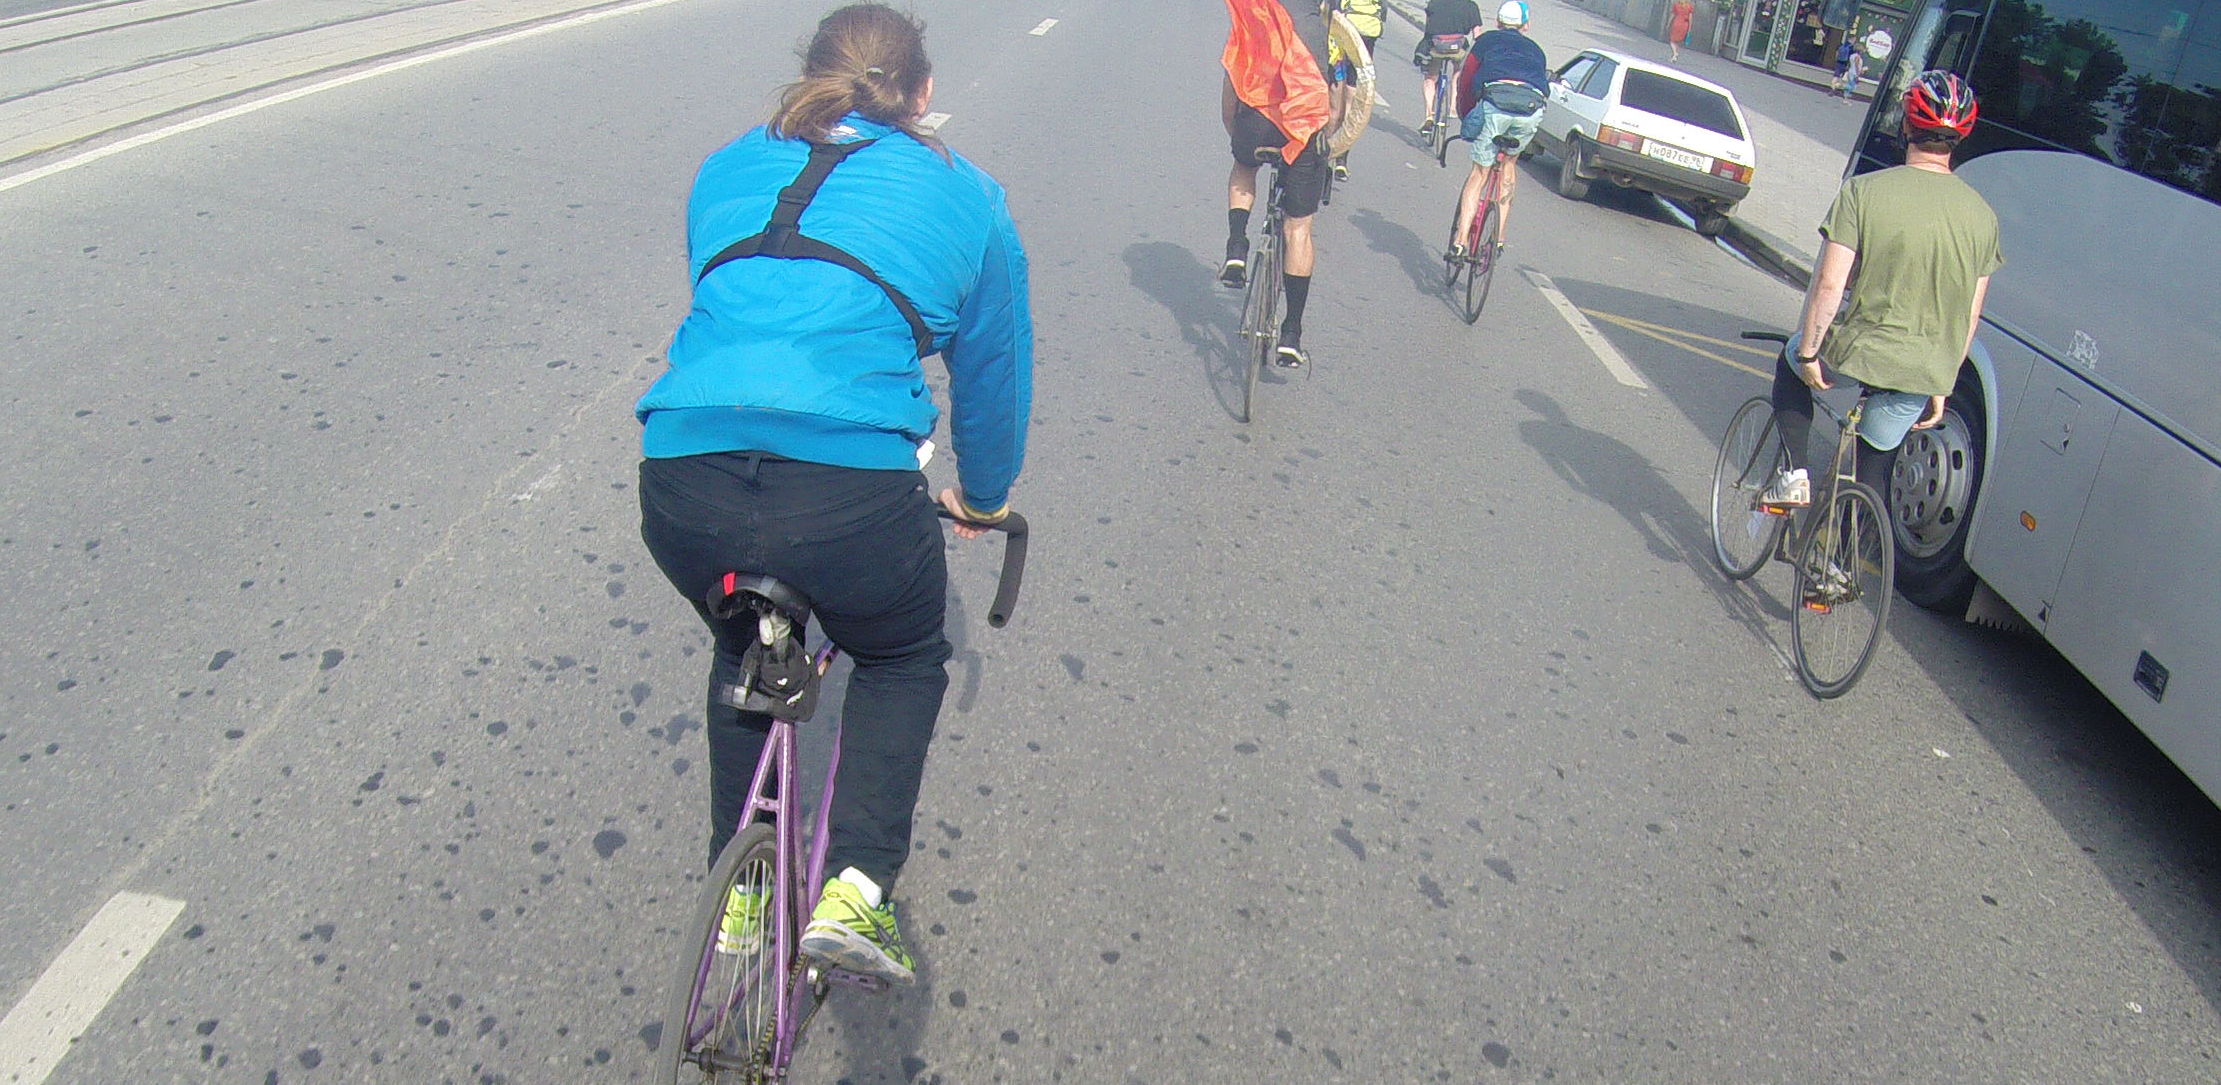 Безумные велосипедисты без тормозов пронеслись по улицам Екатеринбурга. Эксклюзивное видео от первого лица